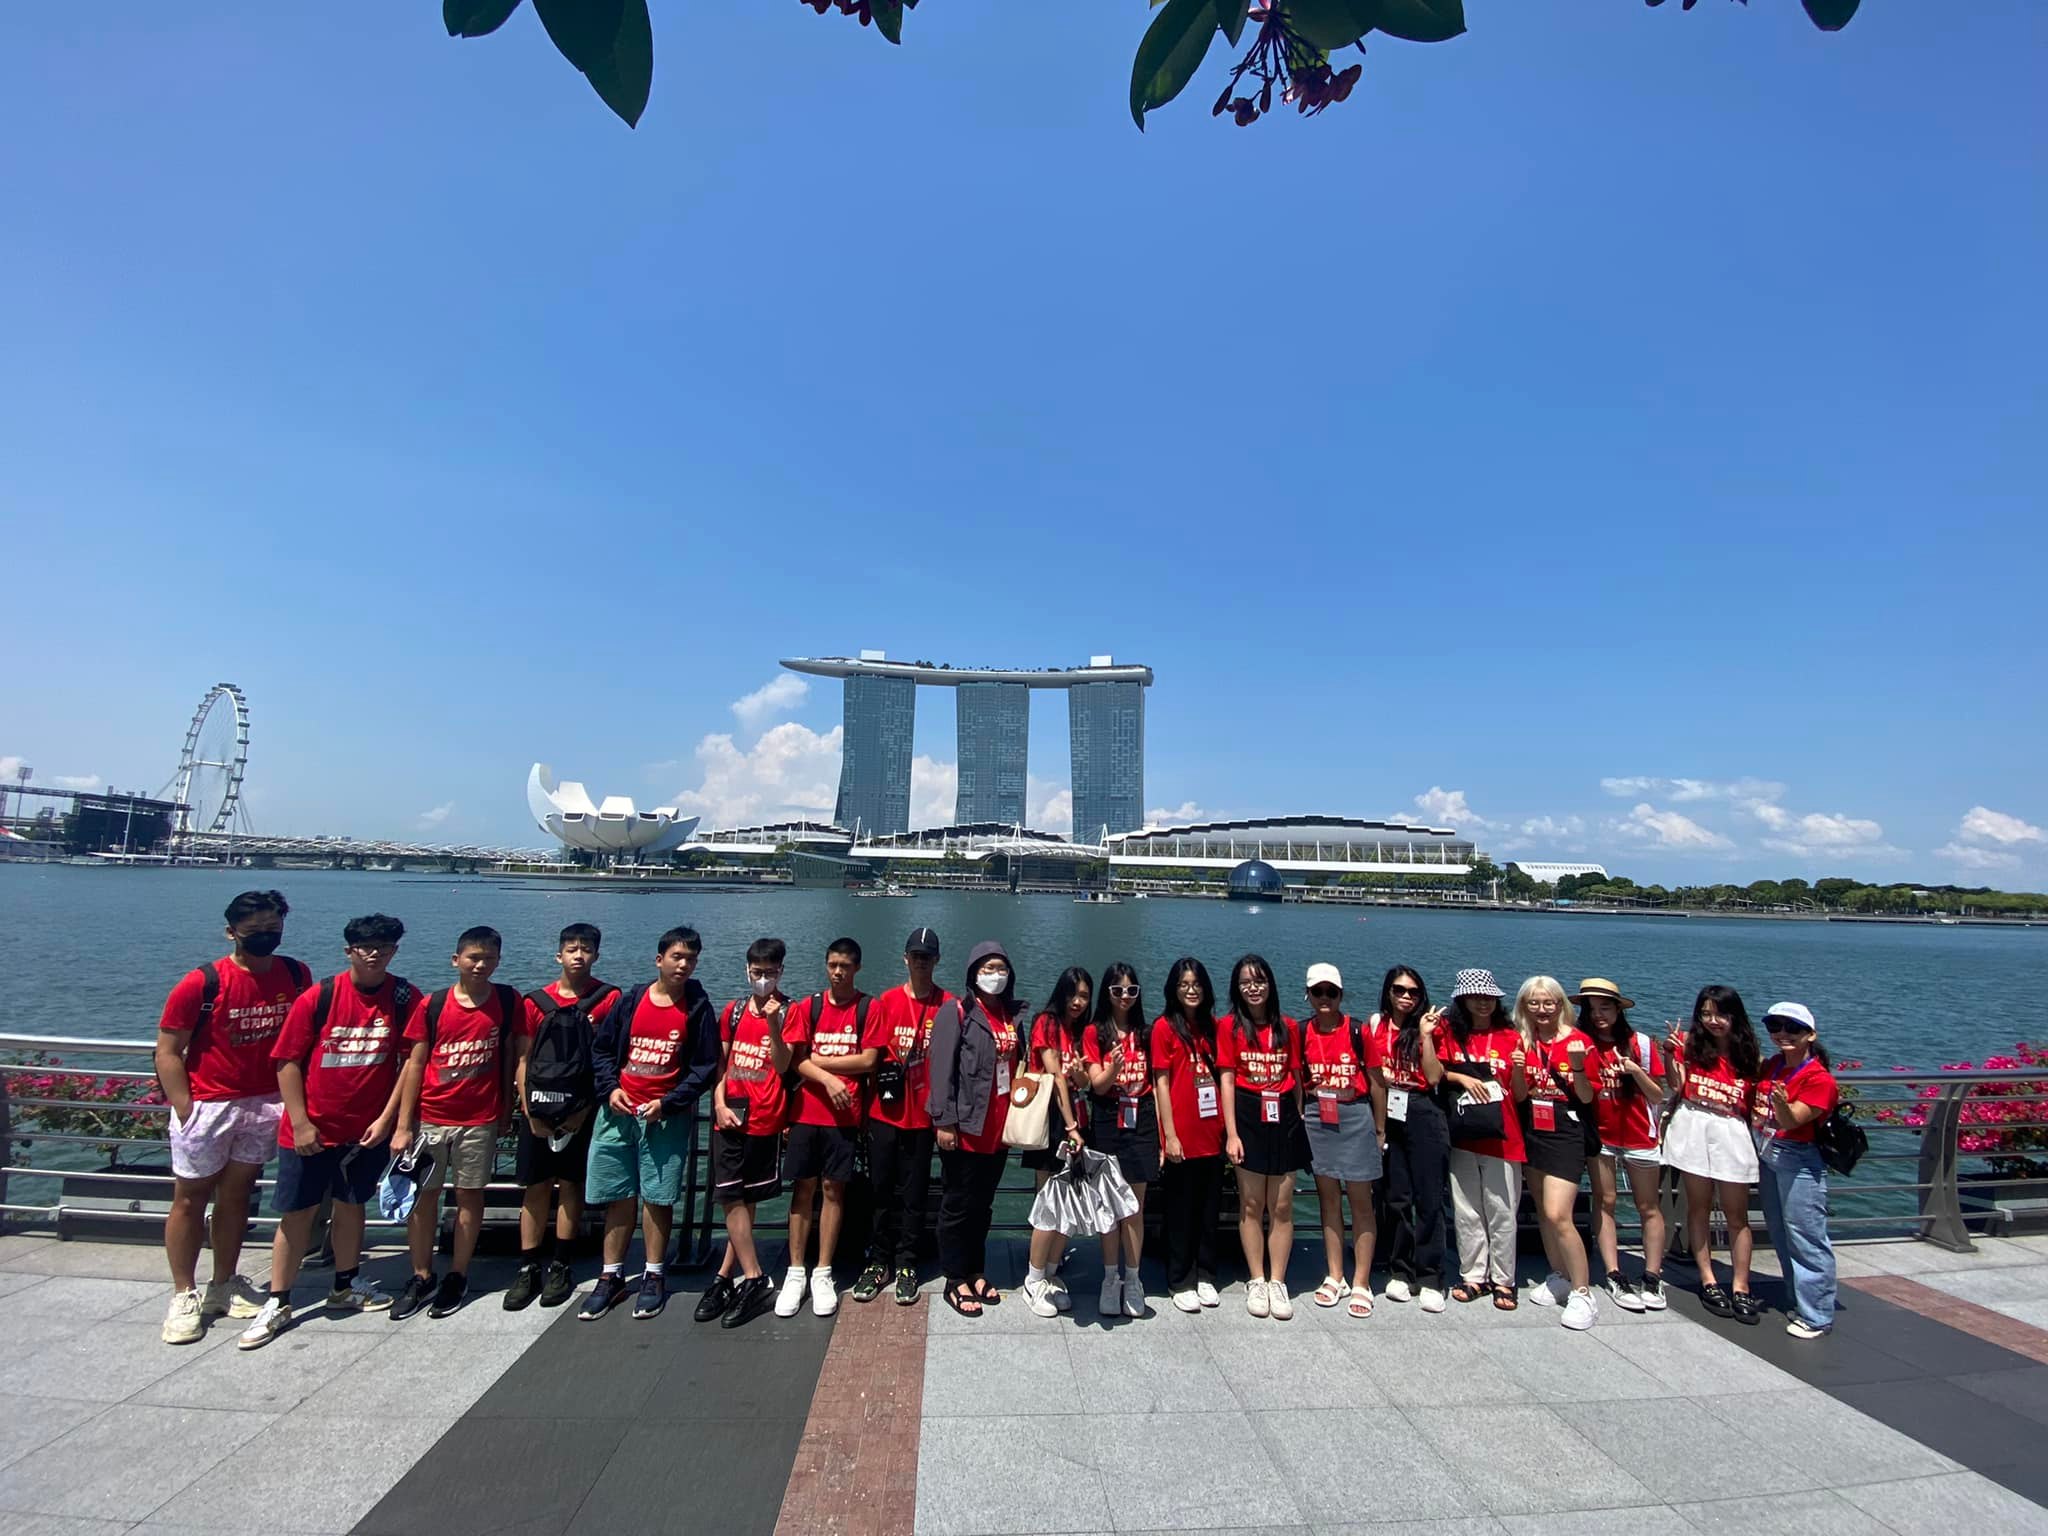 Mariana bay sands đại diện cho vẻ đẹp của kiến trúc hiện đại tại đất nước Singapore